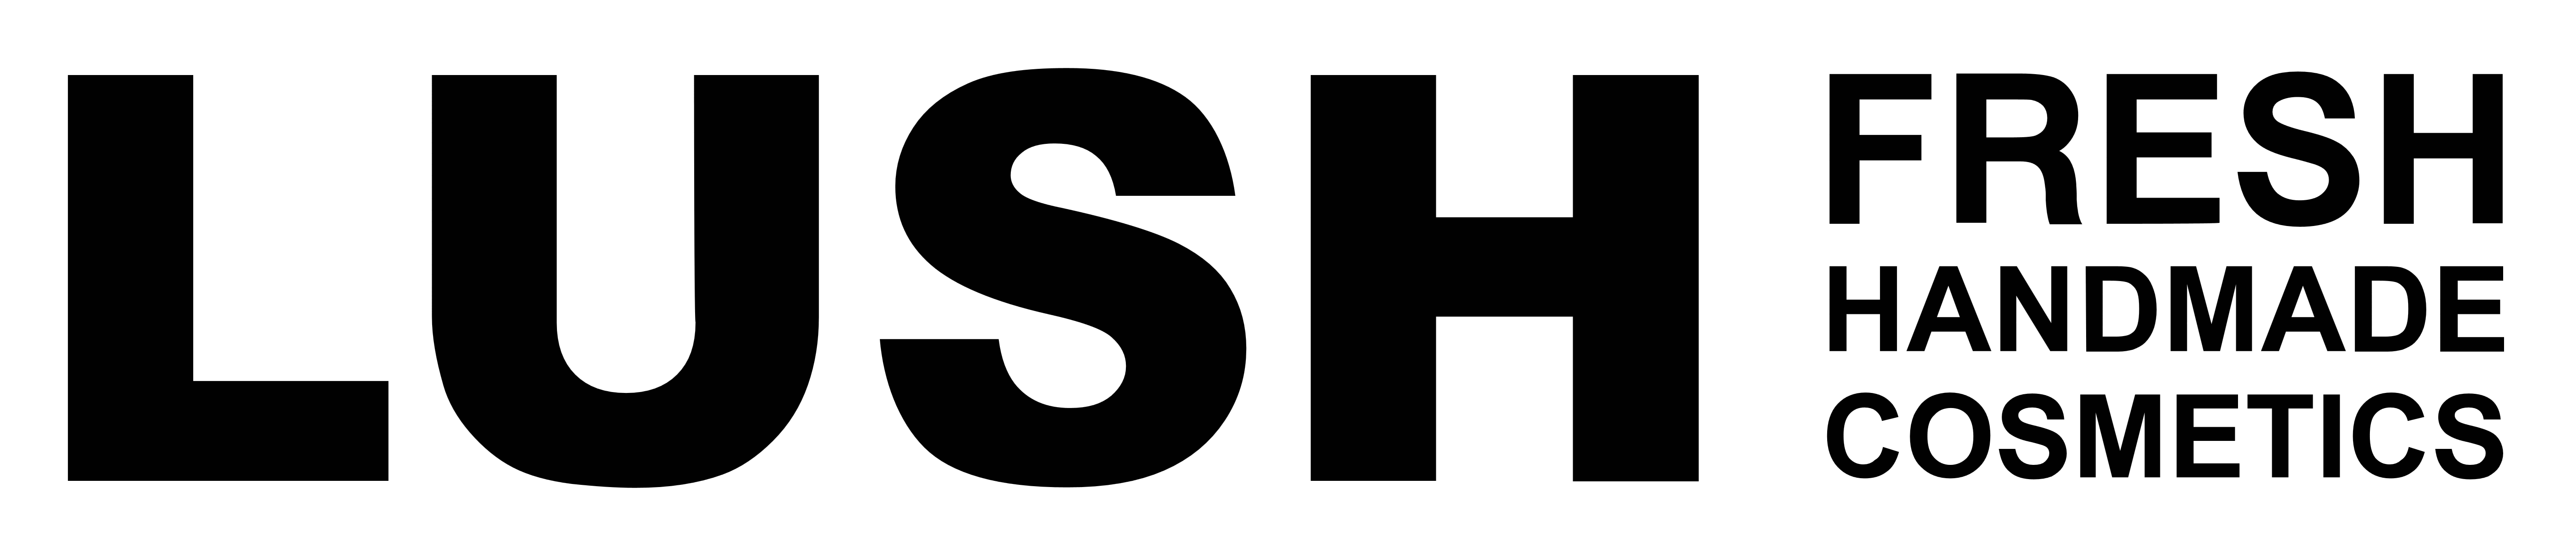 Lush logo, logotype